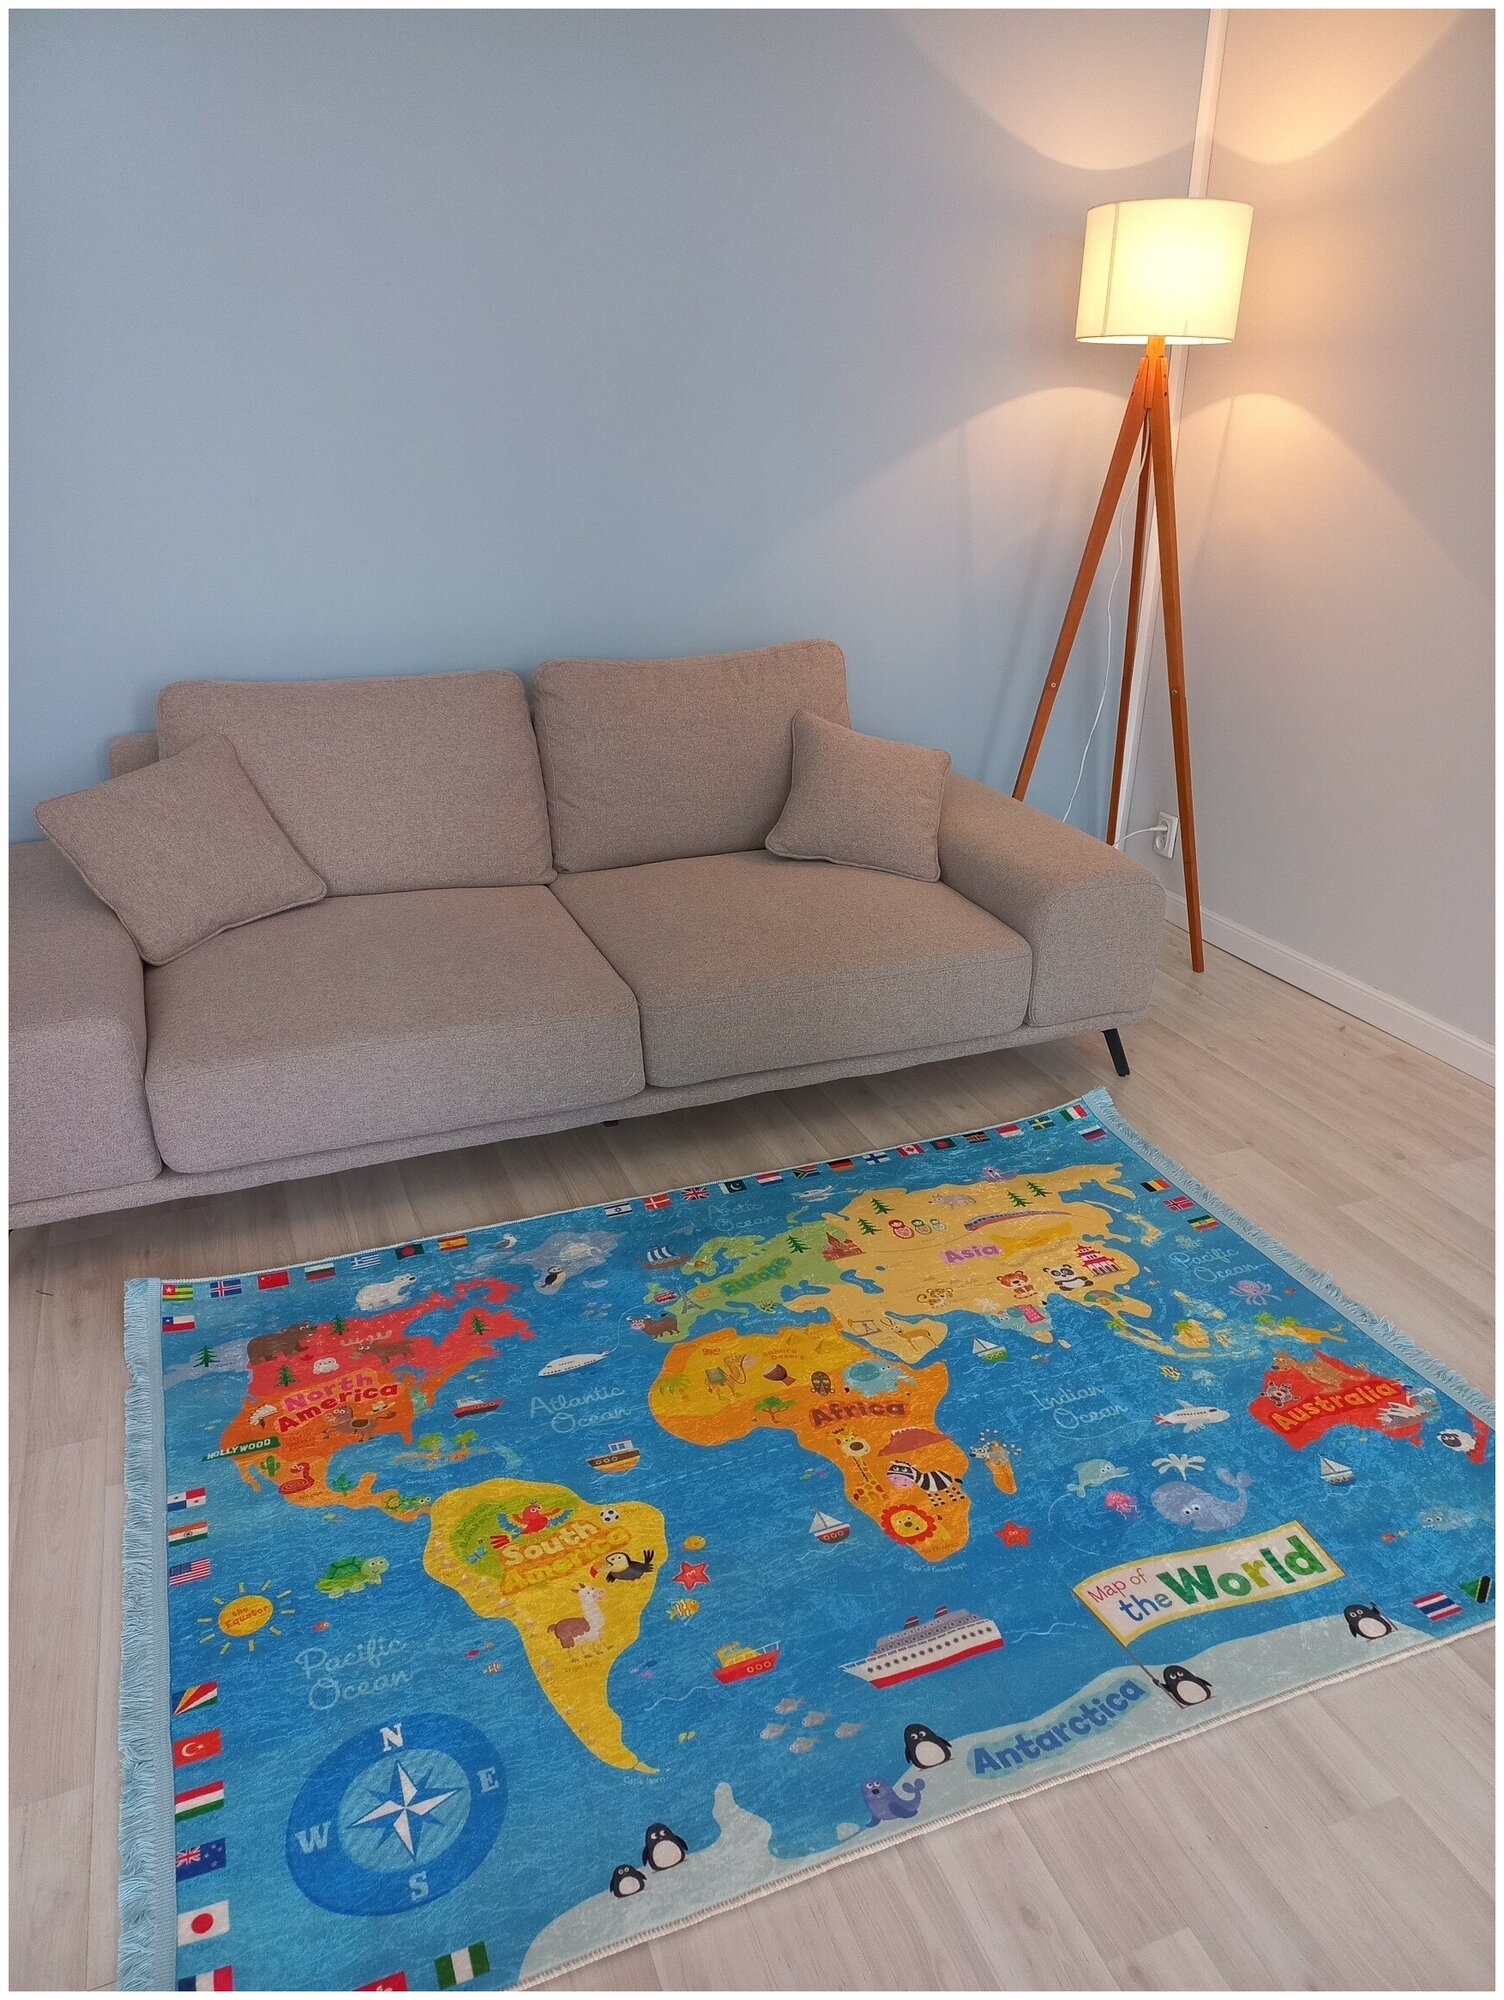 Коврик для детской комнаты, 120*180 см, Турция, карта мира